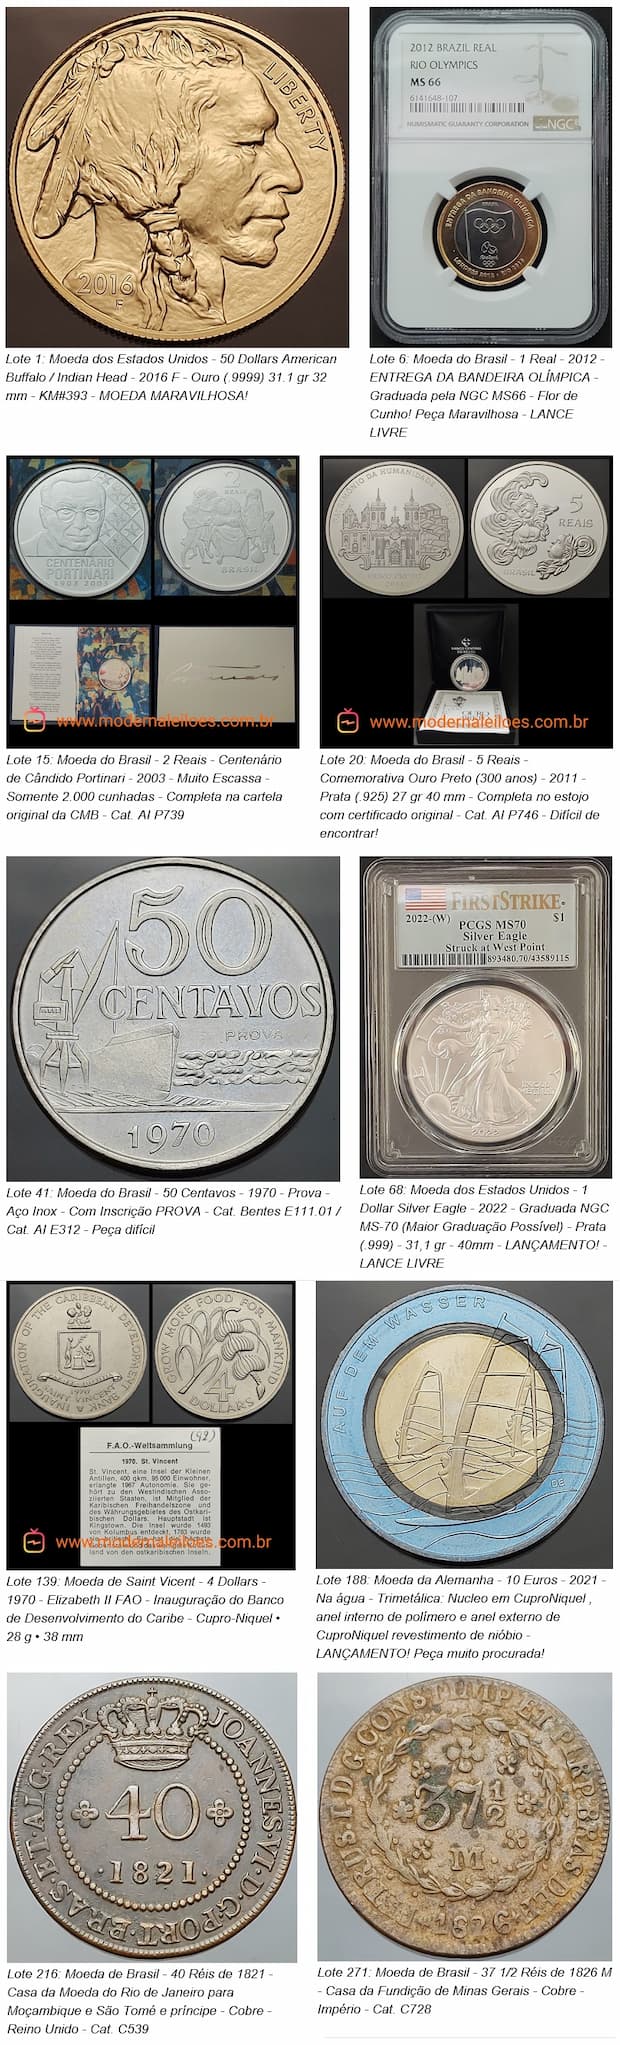 مزادات Flávia Cardoso Soares: 50º مزاد النقود الحديثة - 31-05 في الساعة 7, ويسلط الضوء على. الكشف.